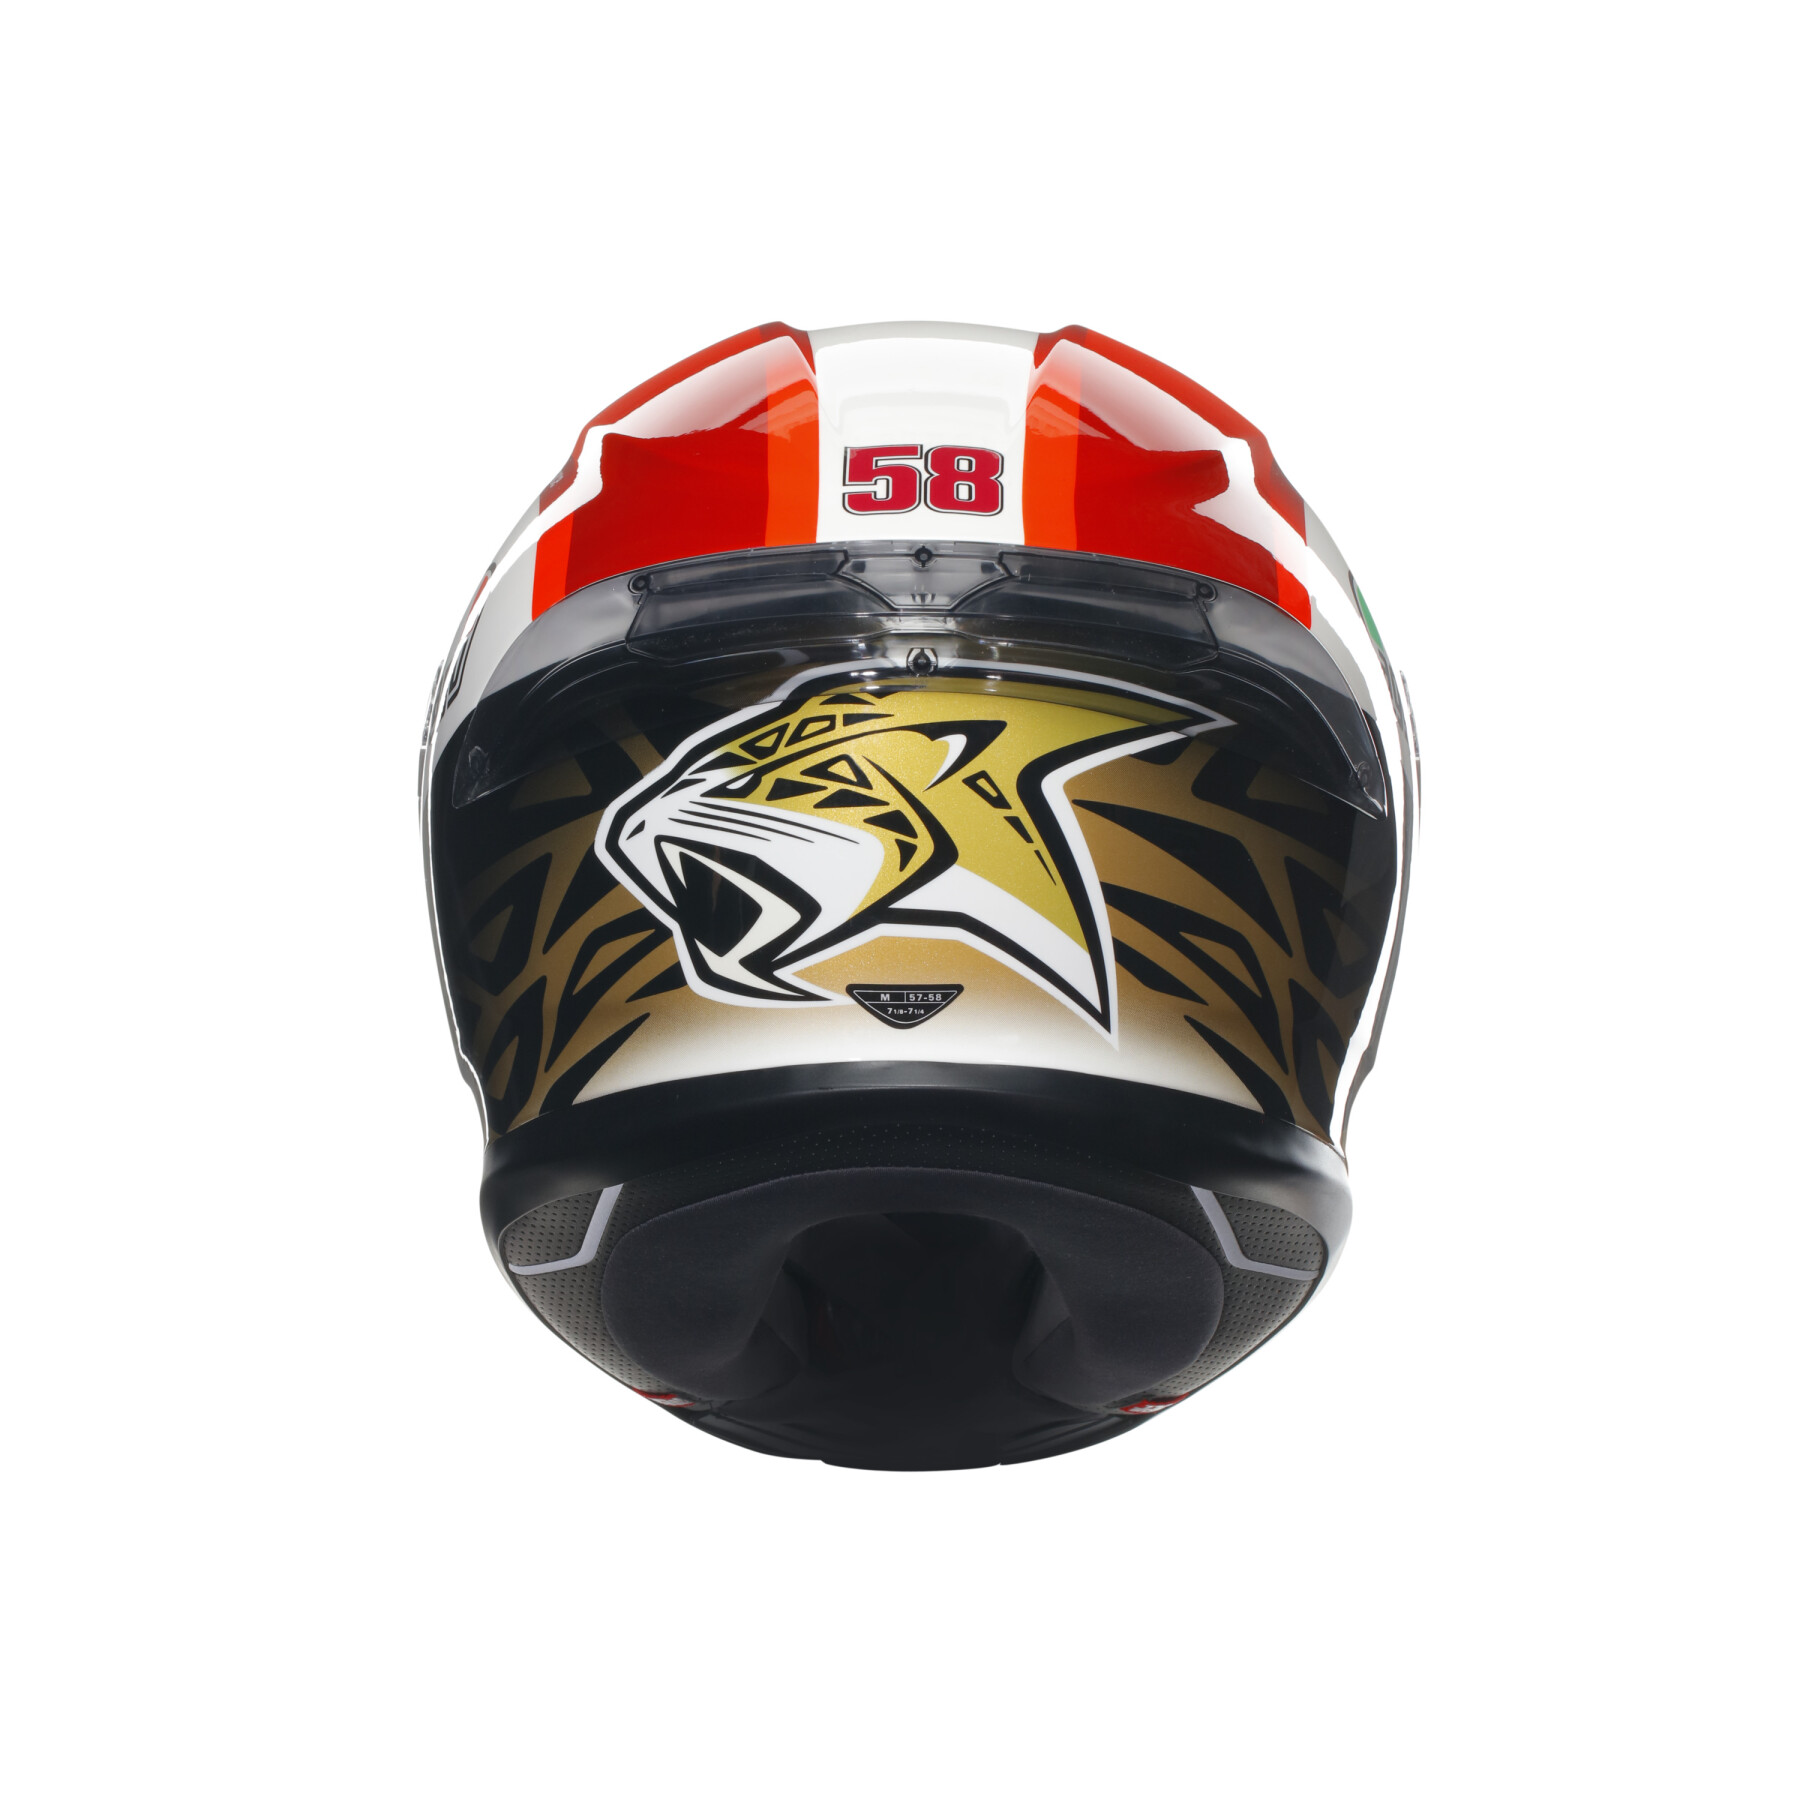 Full face motorcycle helmet AGV K6 S Sic58